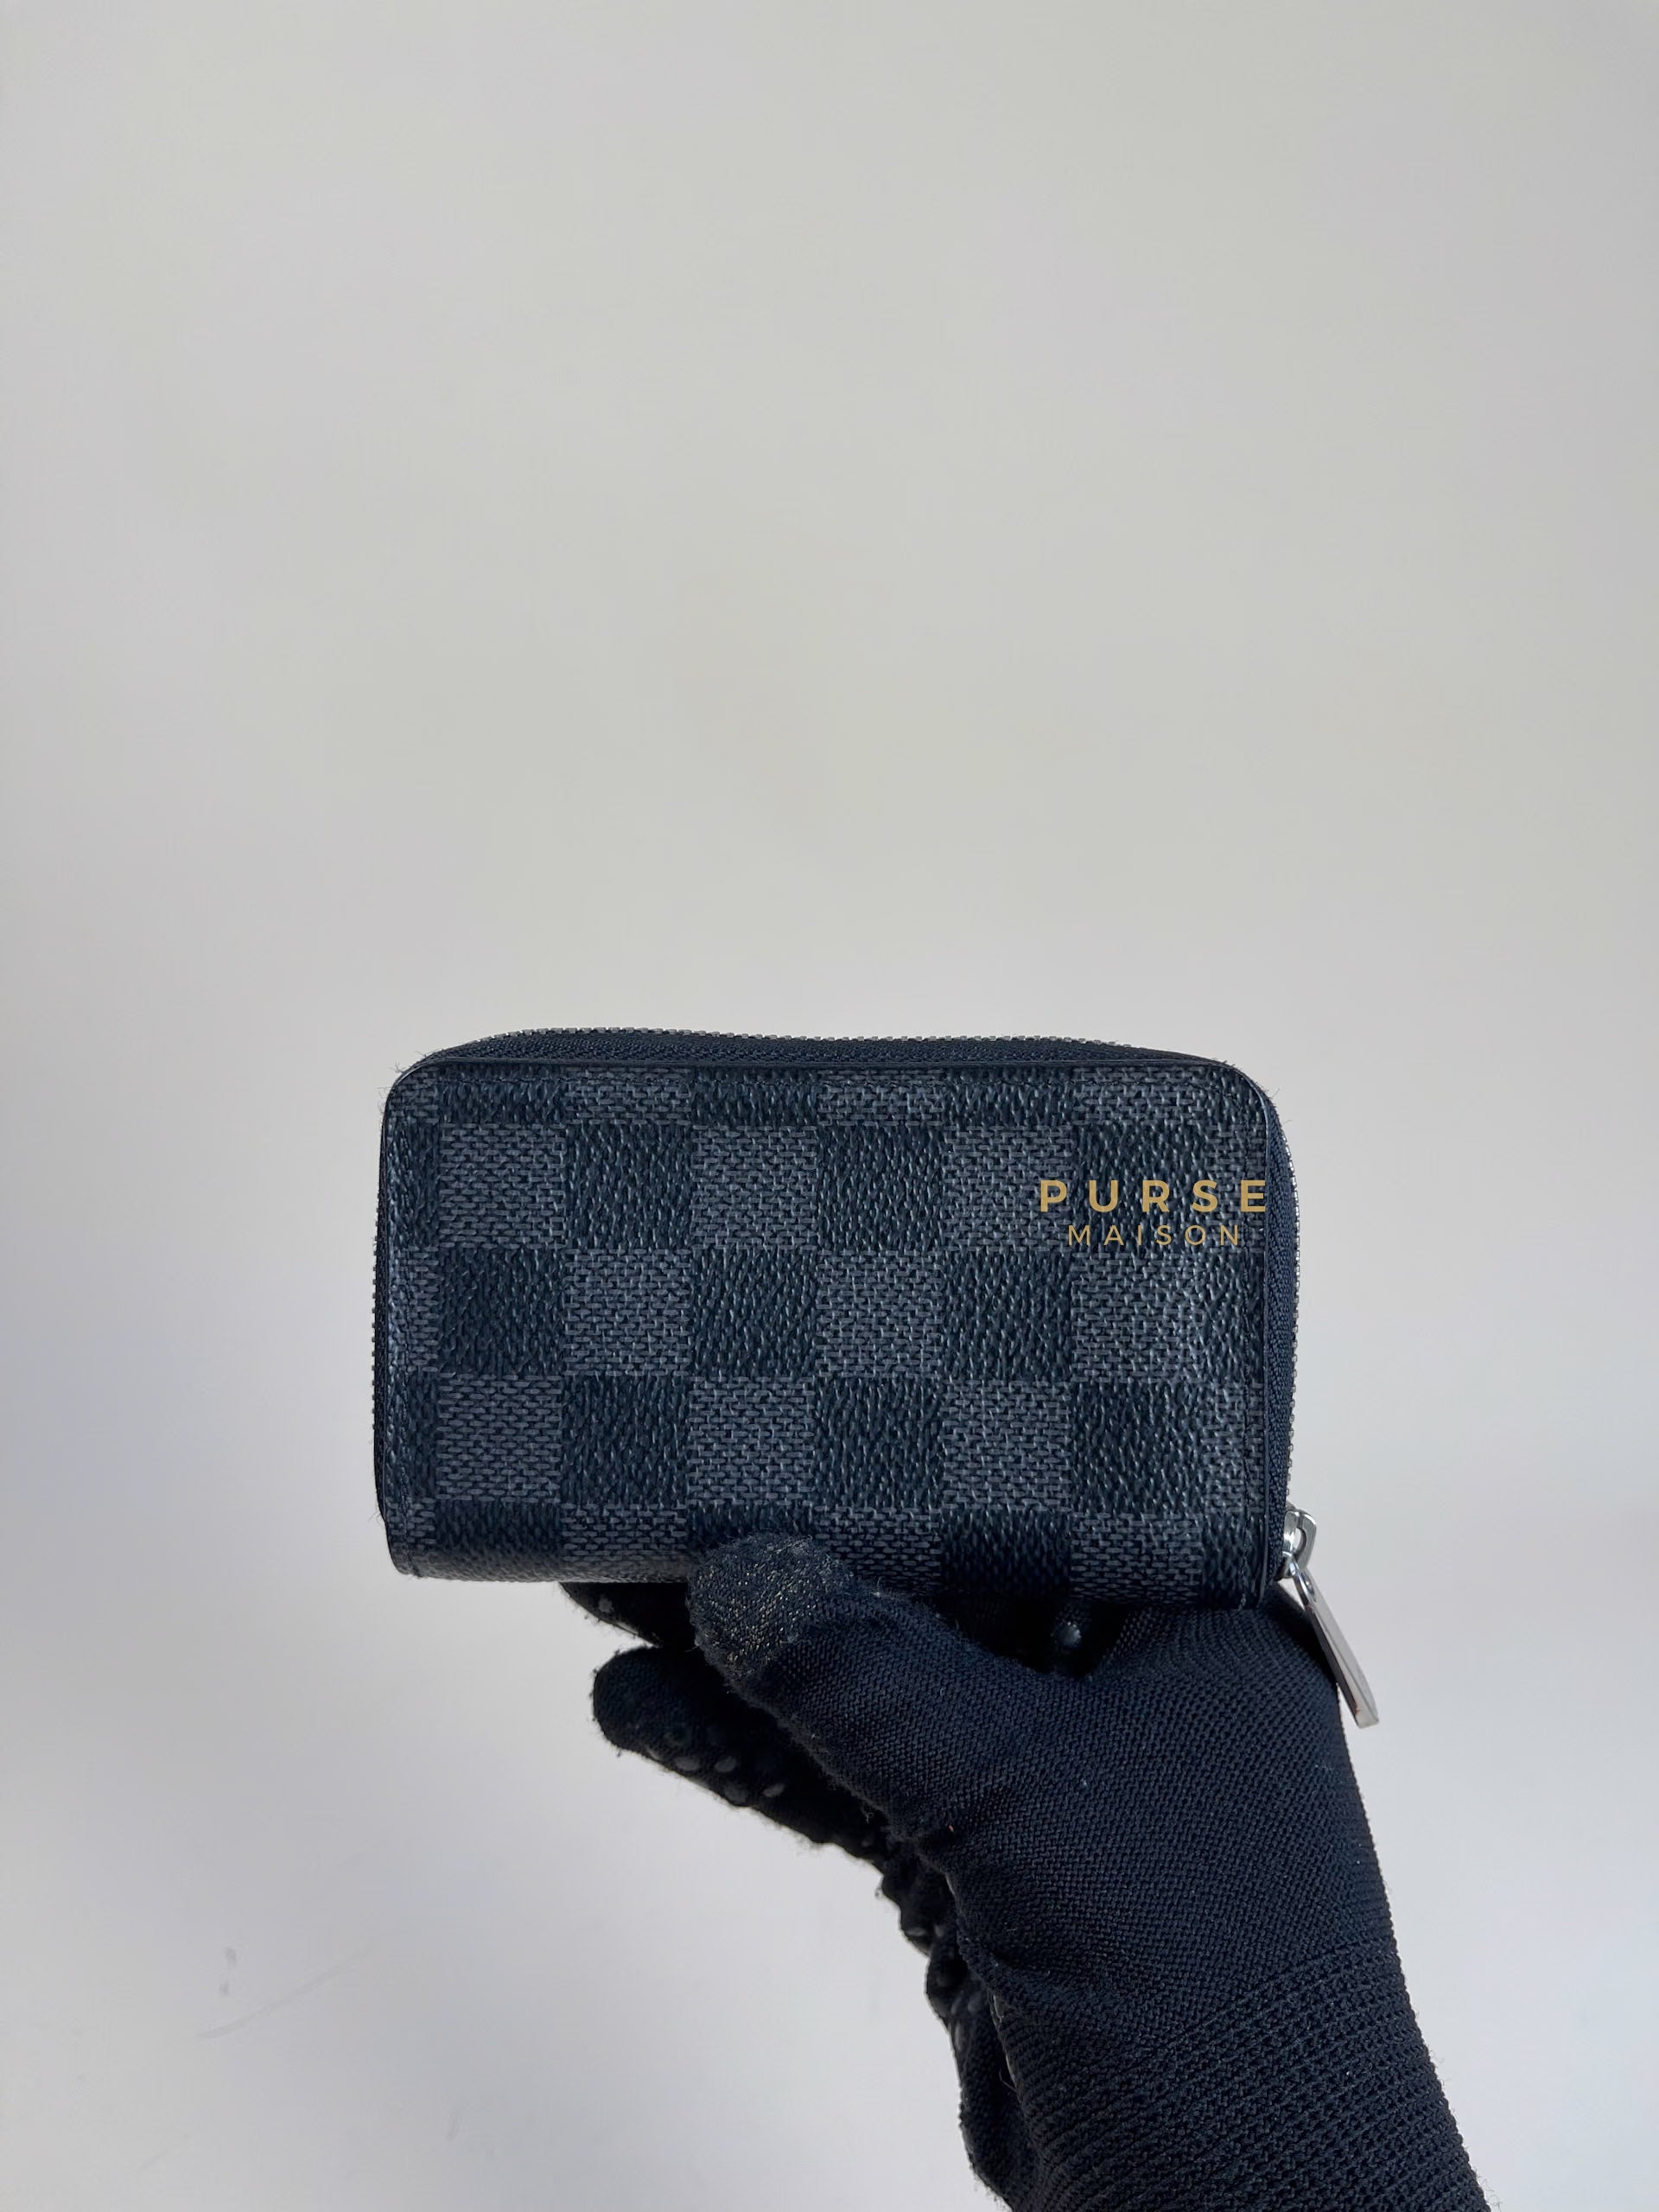 Louis Vuitton Zippy Coin Purse in Damier Graphite Canvas (Date Code: MI1191) | Purse Maison Luxury Bags Shop